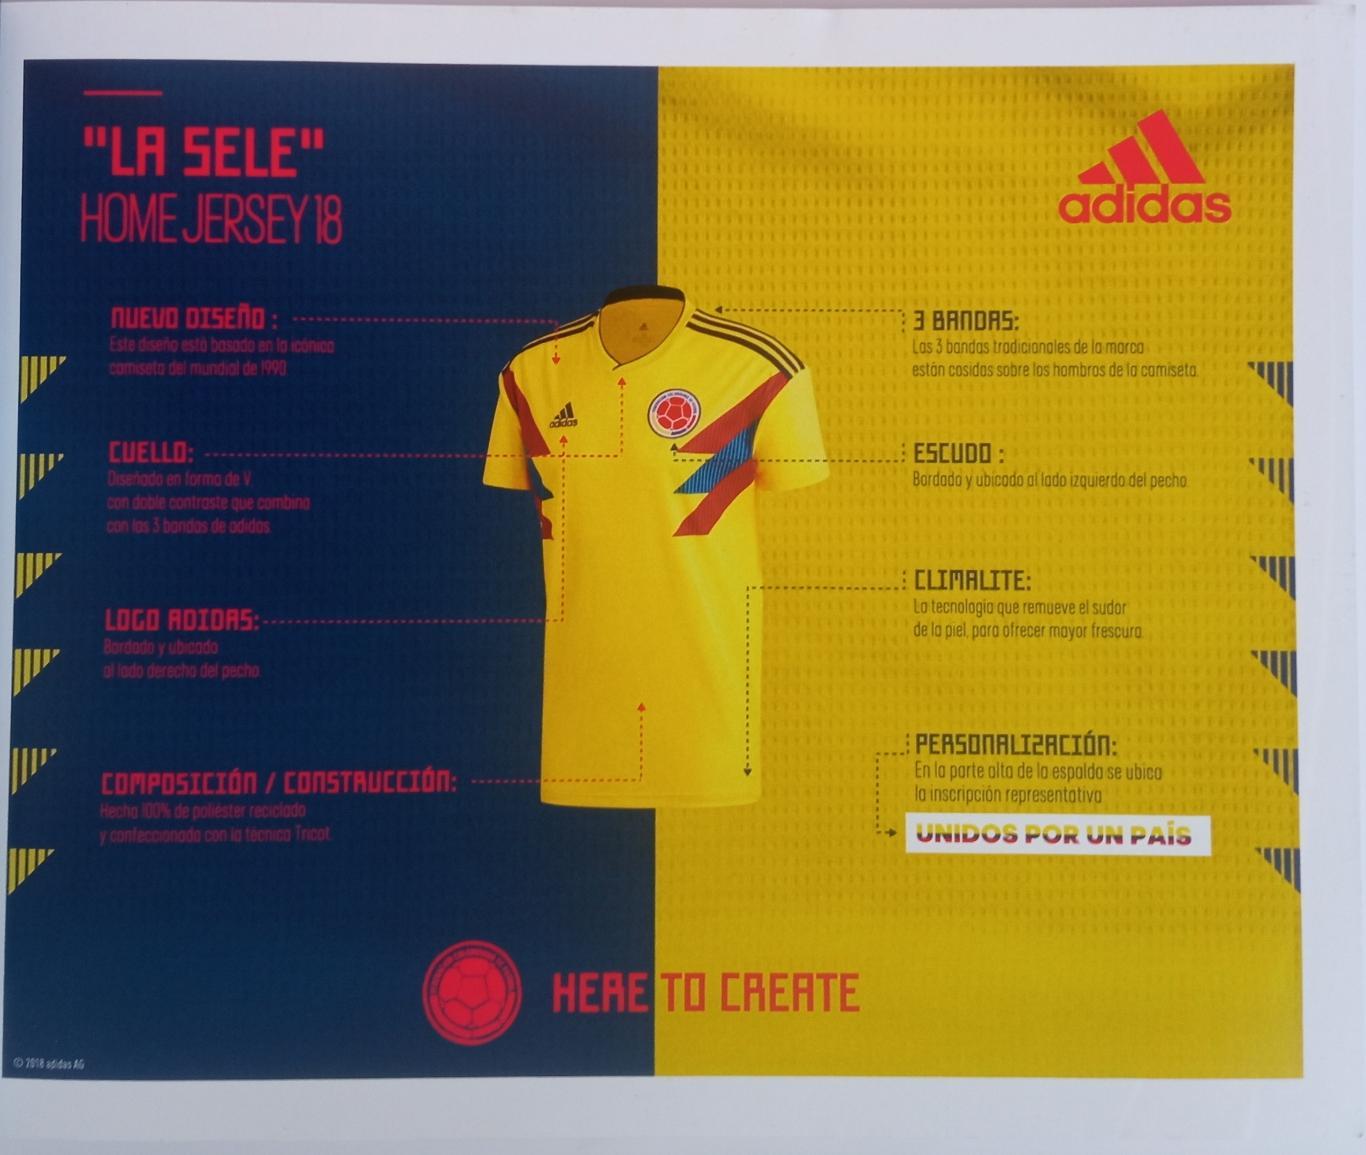 Colombia / Колумбия на Чемпионате мира по футболу-2018 Official Guide 3